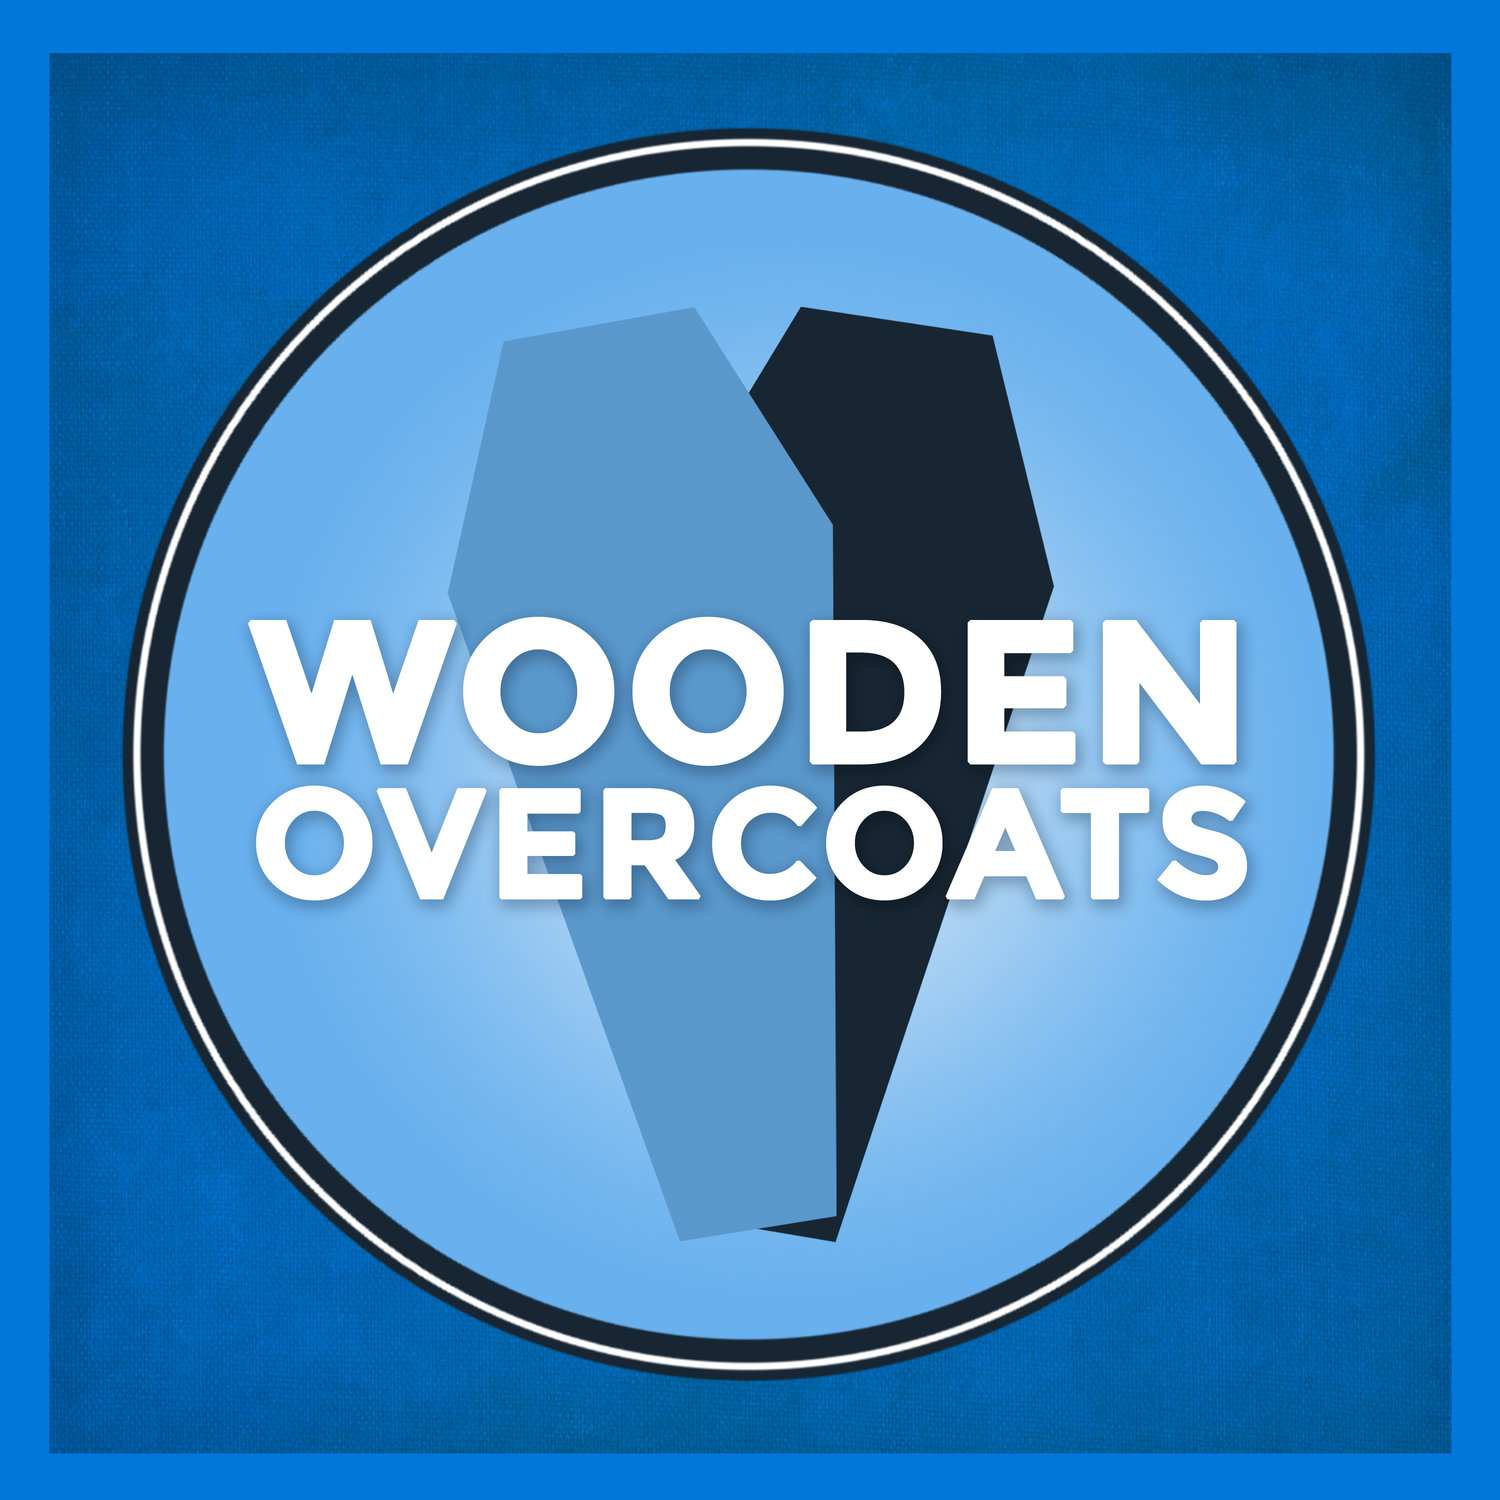 Wooden Overcoats by David K. Barnes